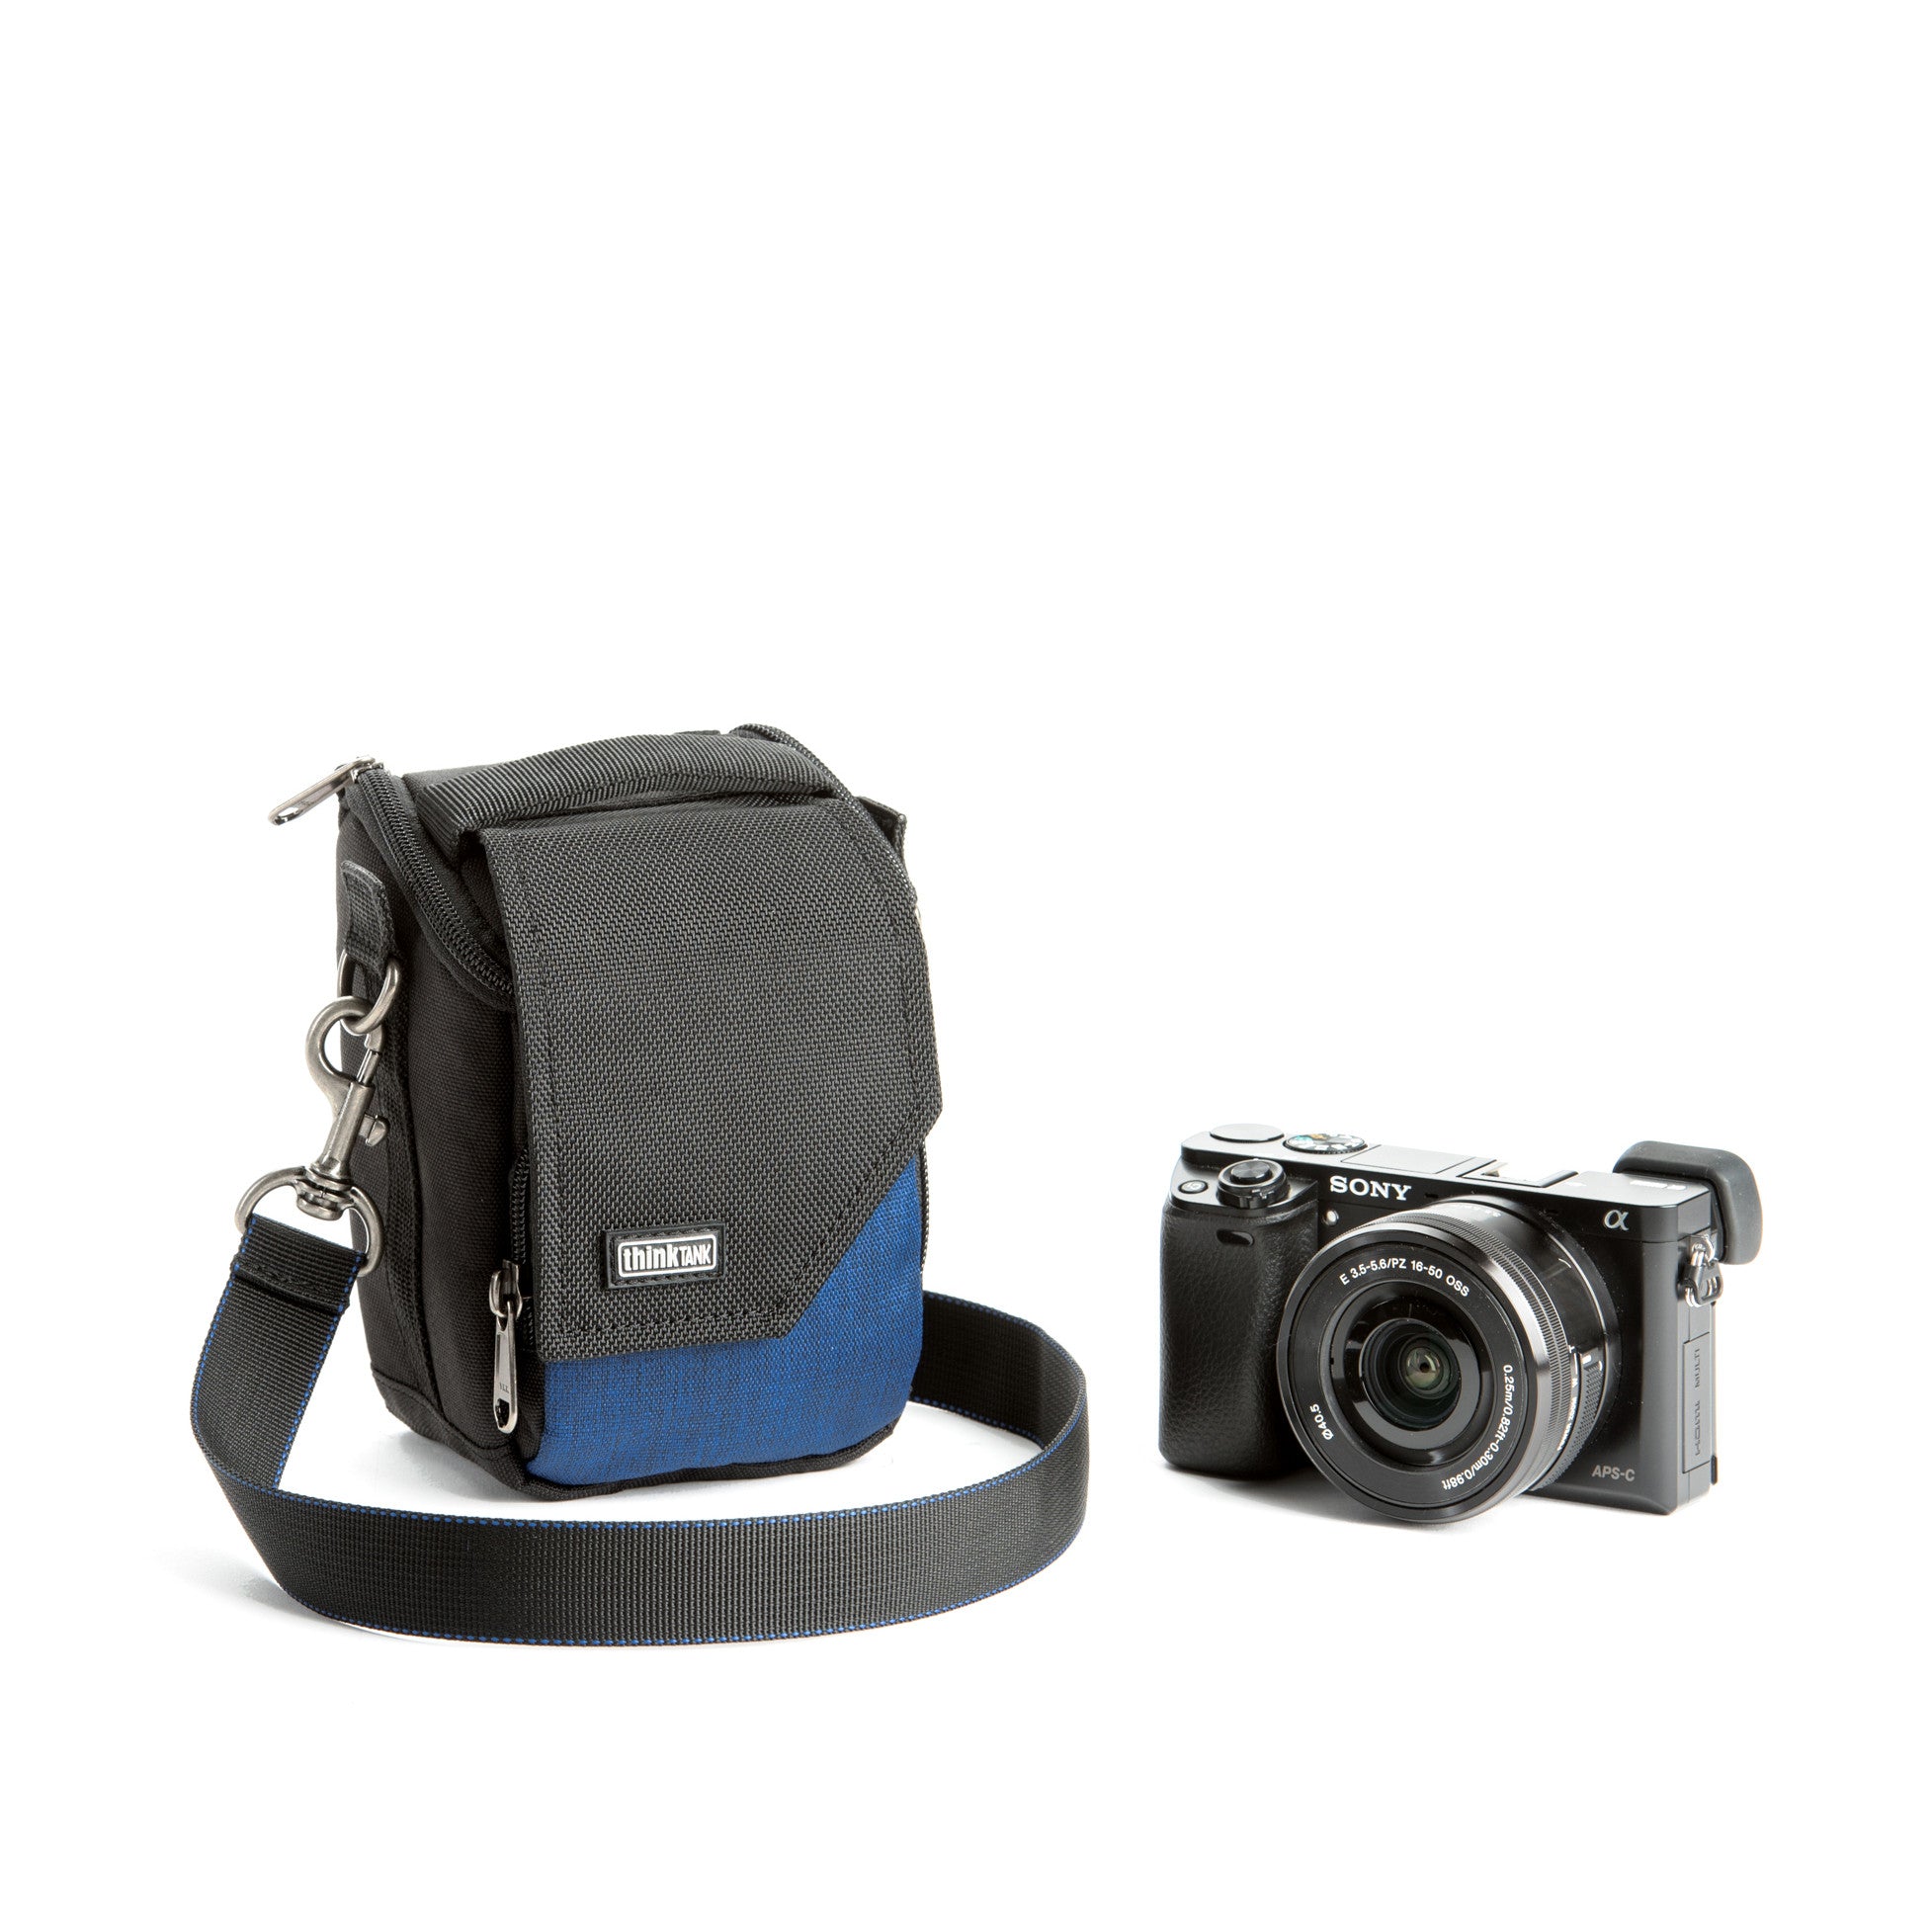 camera bag blue